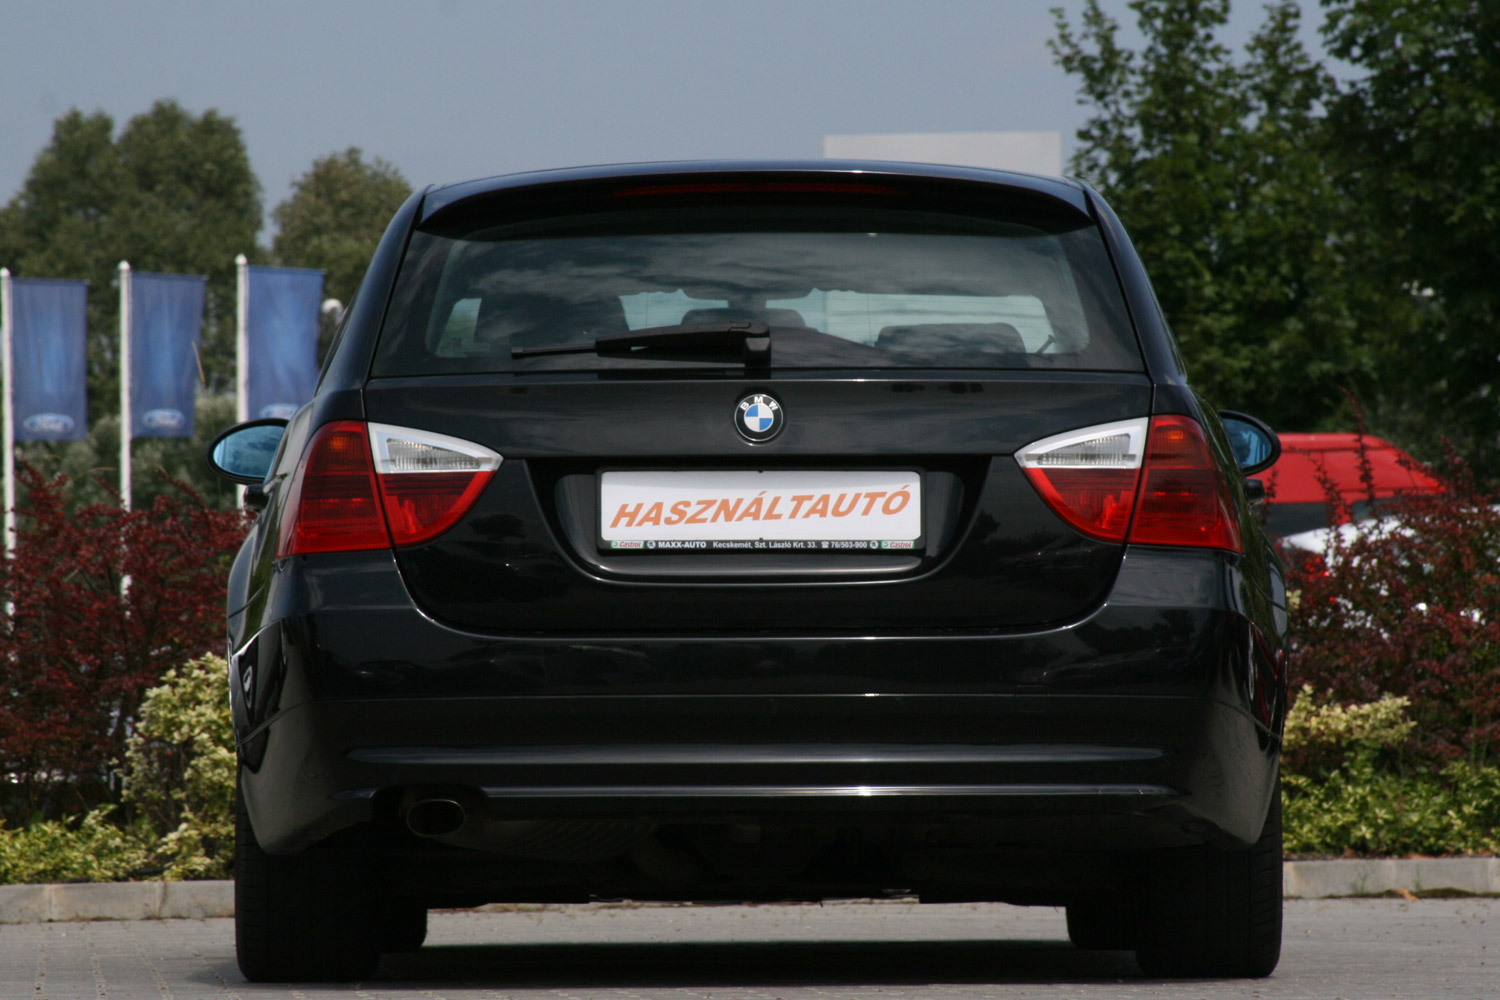 Használt autó: a magyarok kedvenc BMW-je 7